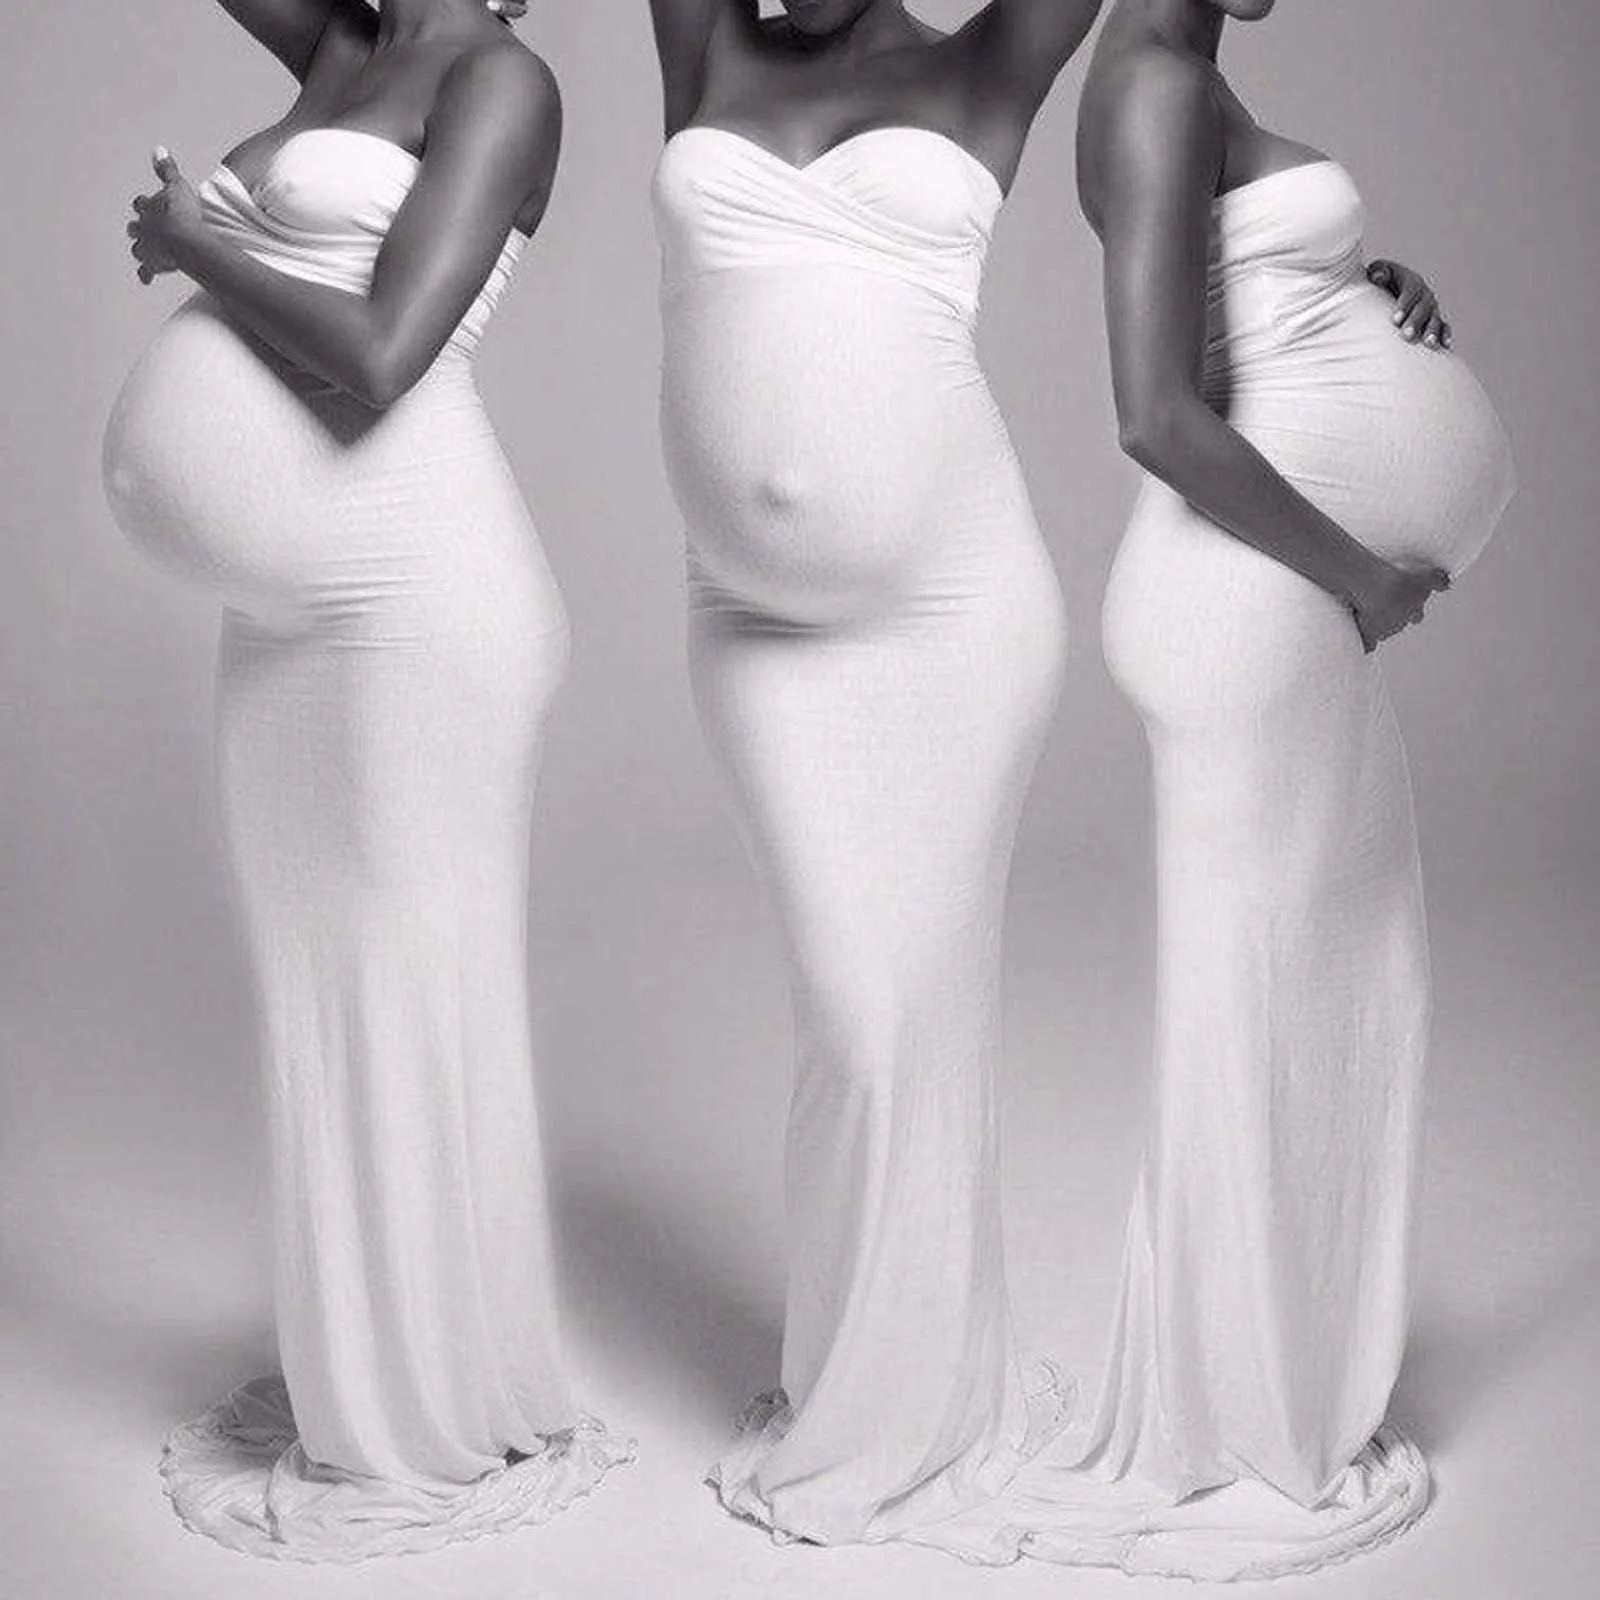 @ Femmes enceintes sexy photographie accessoires sans manches sans bretelles longue robe de maternité vêtements de charme pour les femmes enceintes Q0713